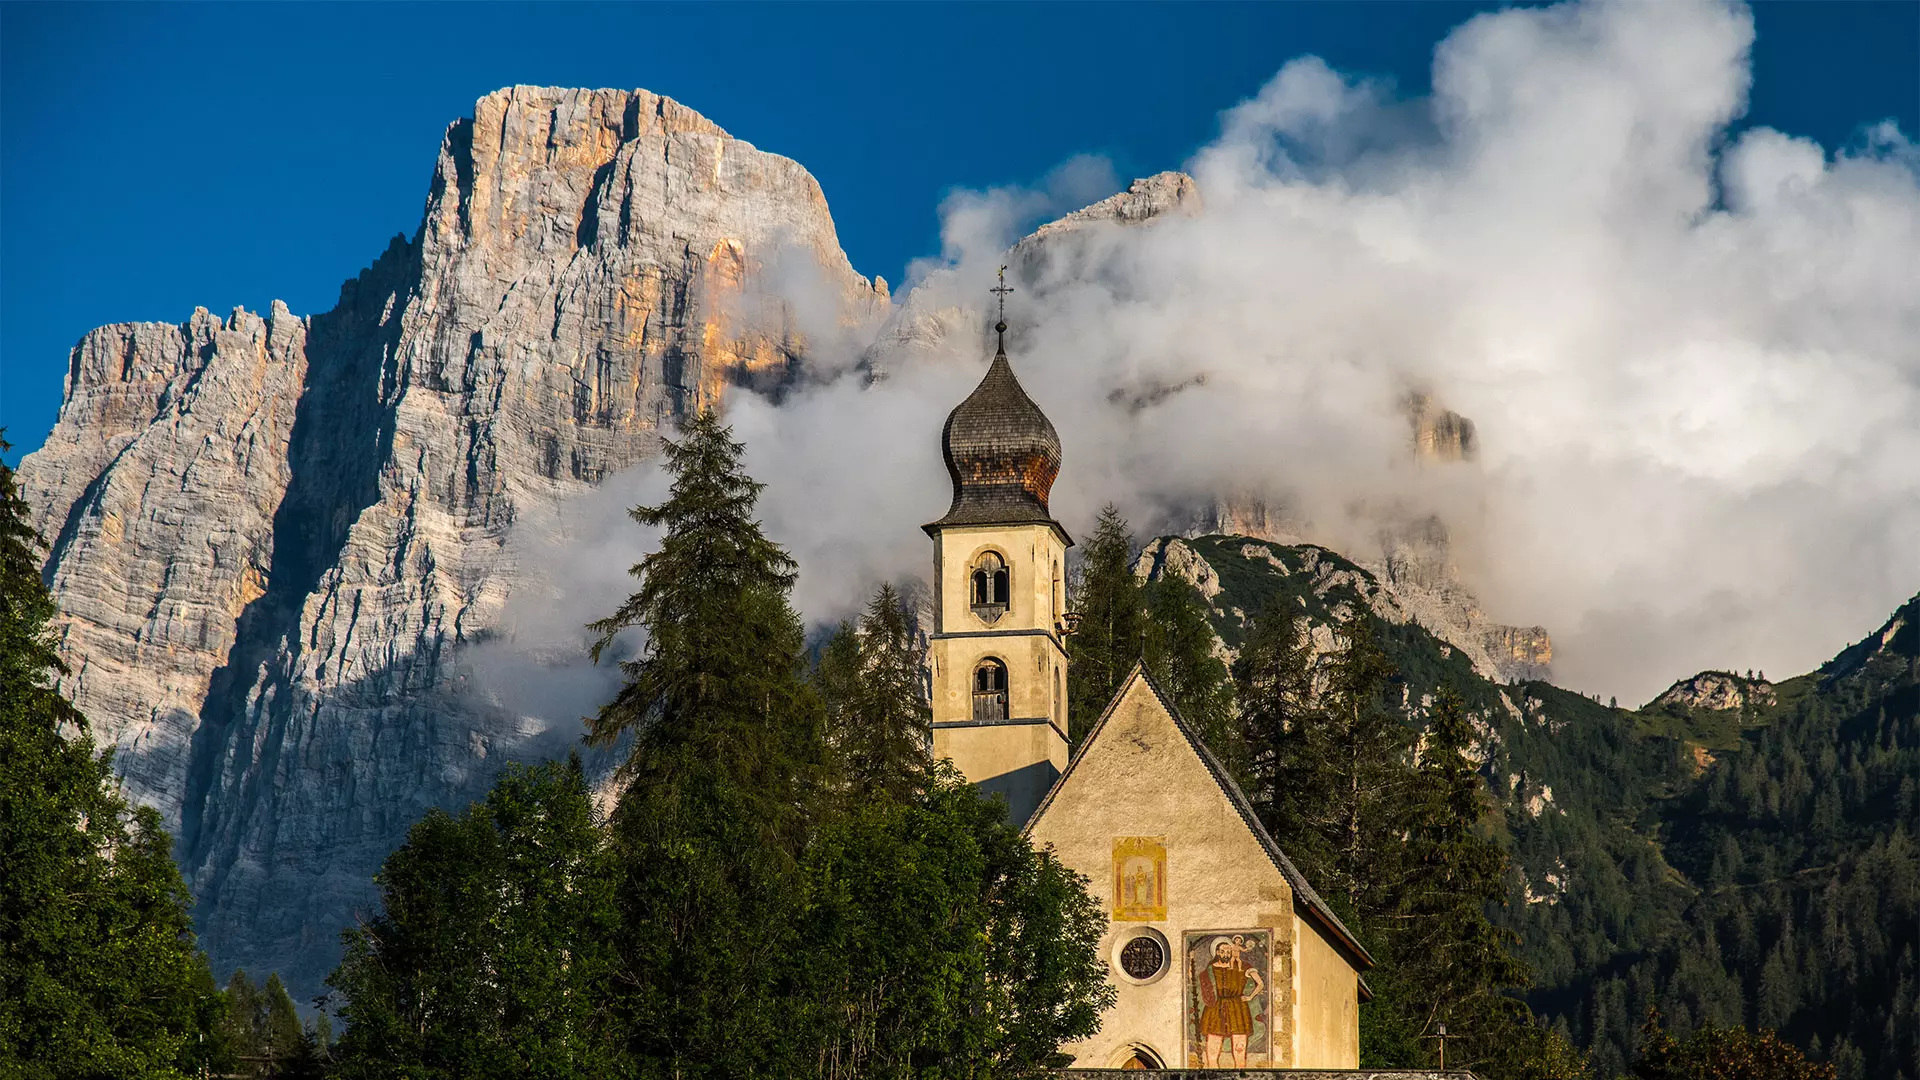 La chiesa di Santa Fosca e il Monte Pelmo alle sue spalle, Selva di Cadore, Val Fiorentina, Dolomitii (BL), Veneto, Italy